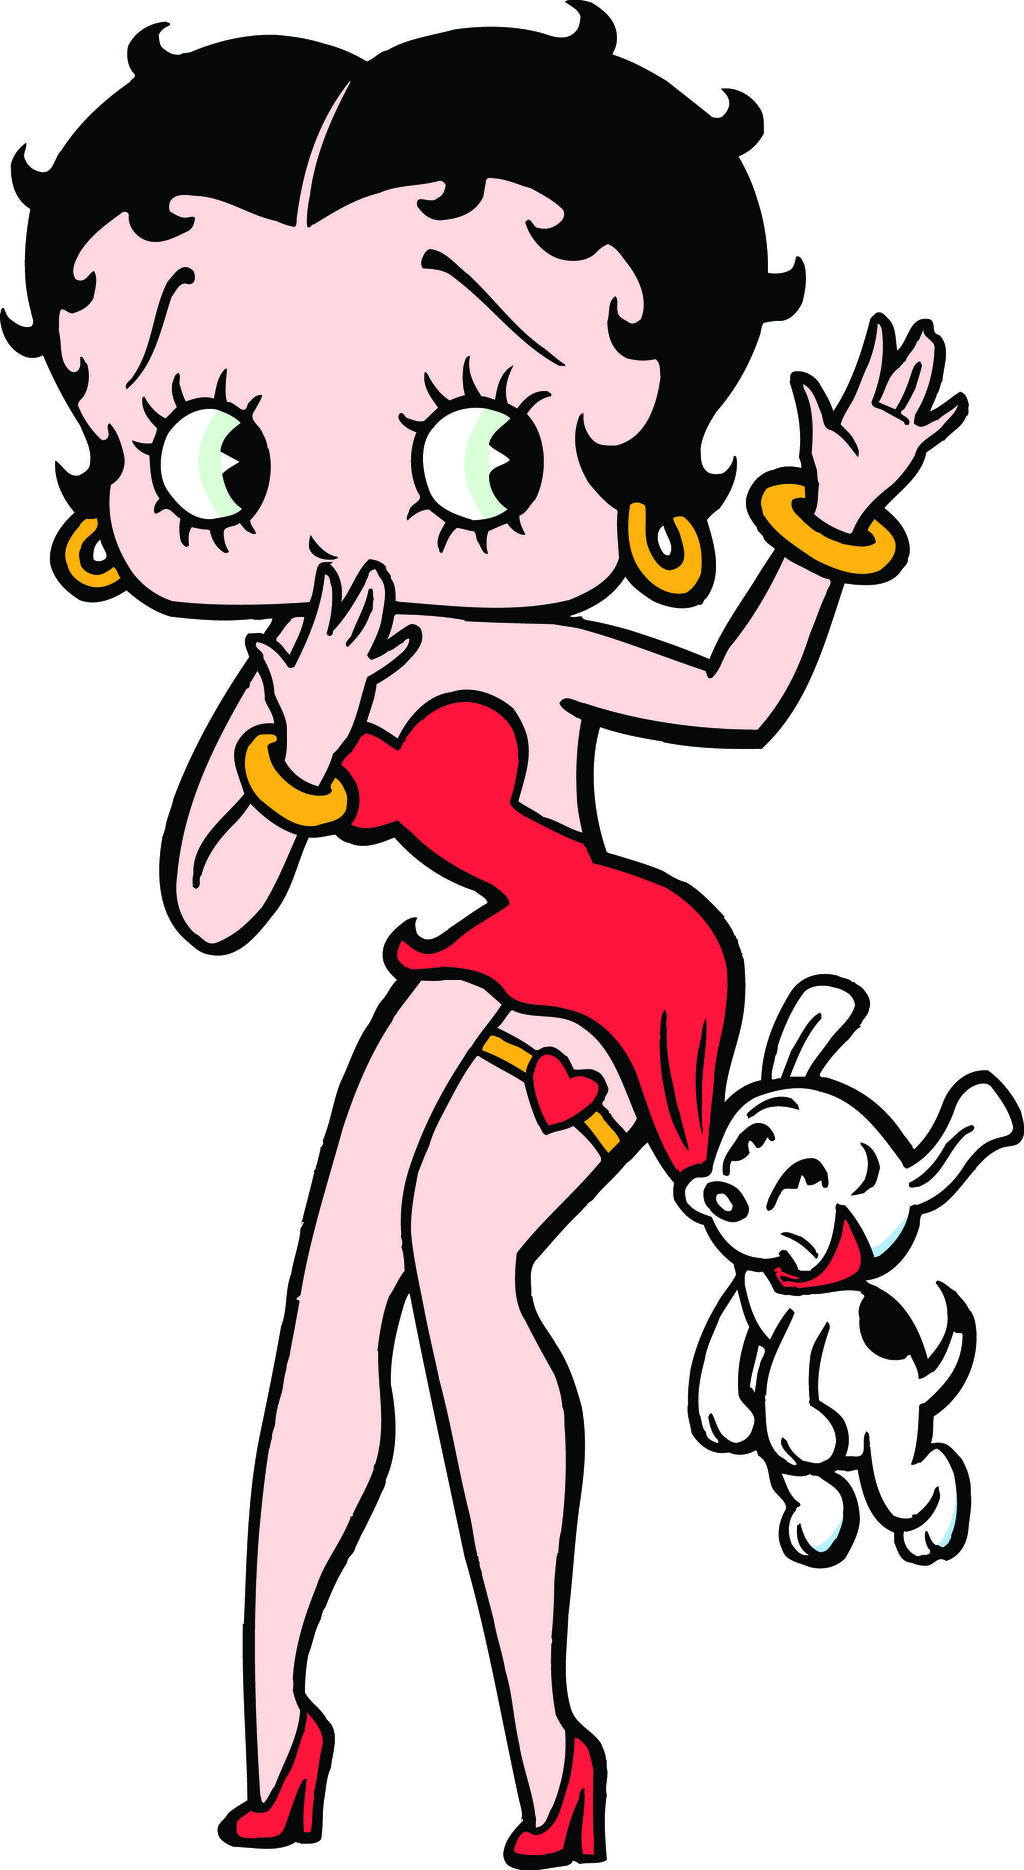 Betty Boop es un ícono de belleza y sensualidad El Siglo de Torreón